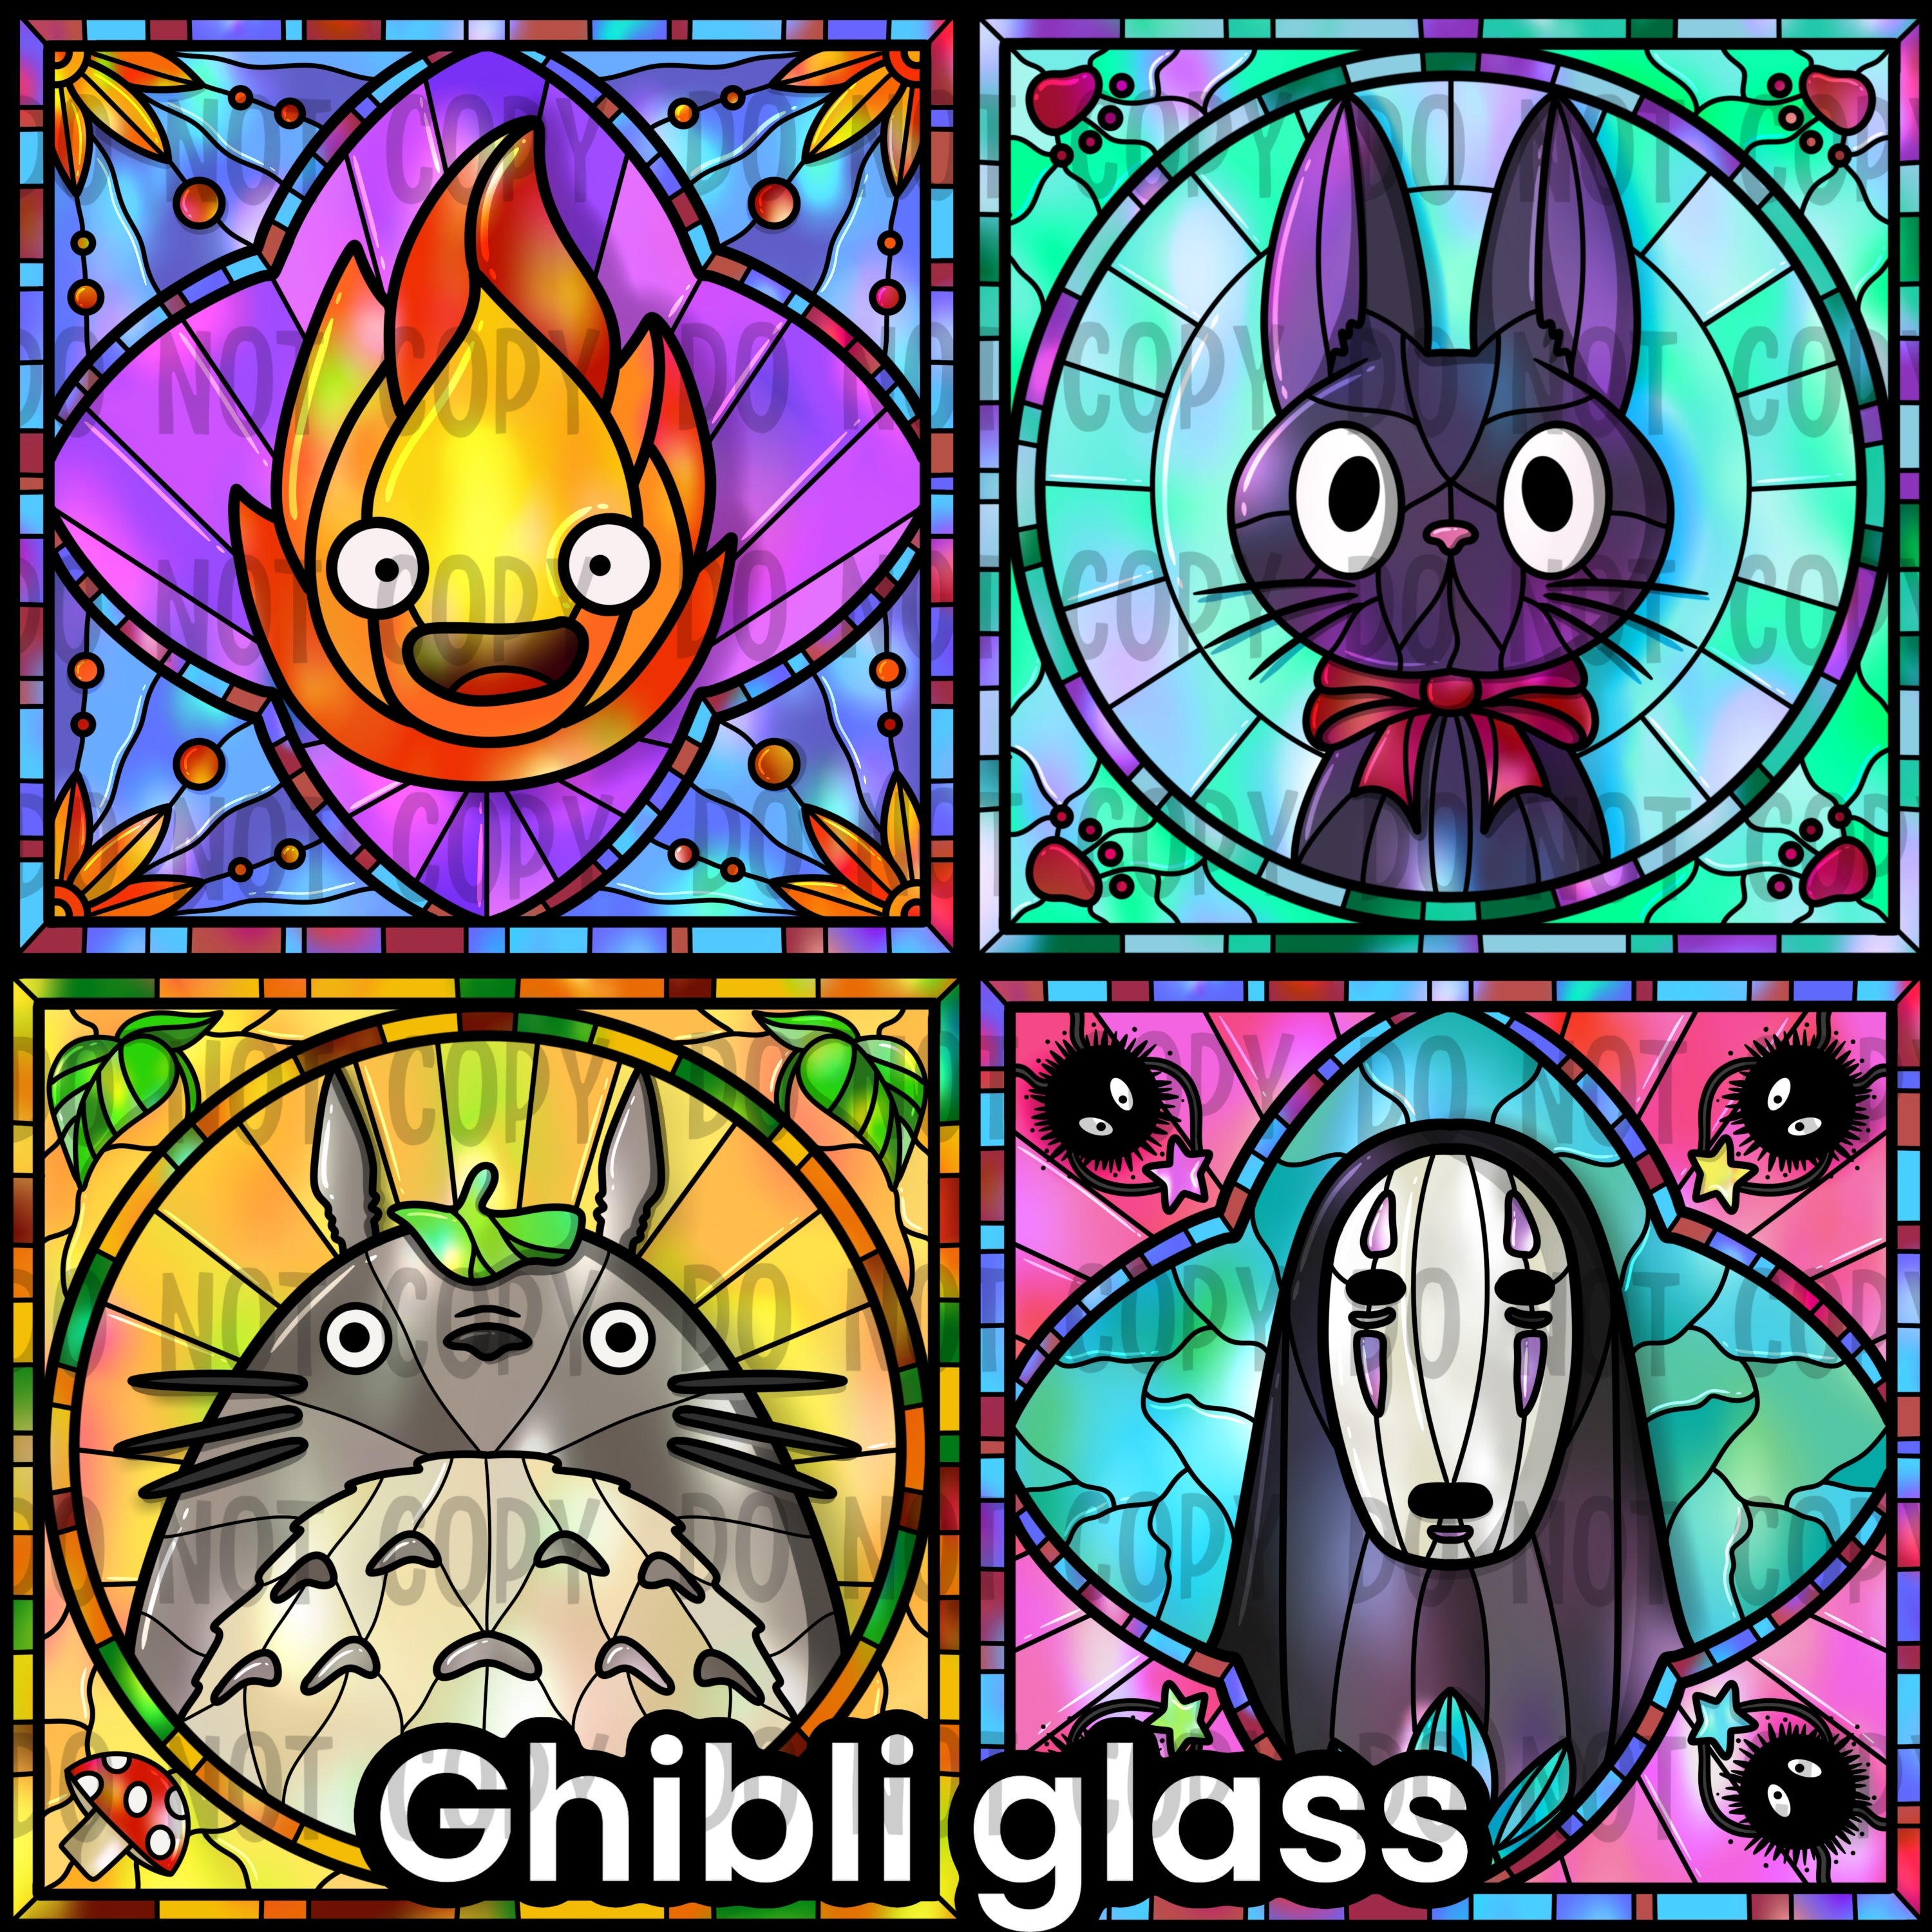 Ghibli glass